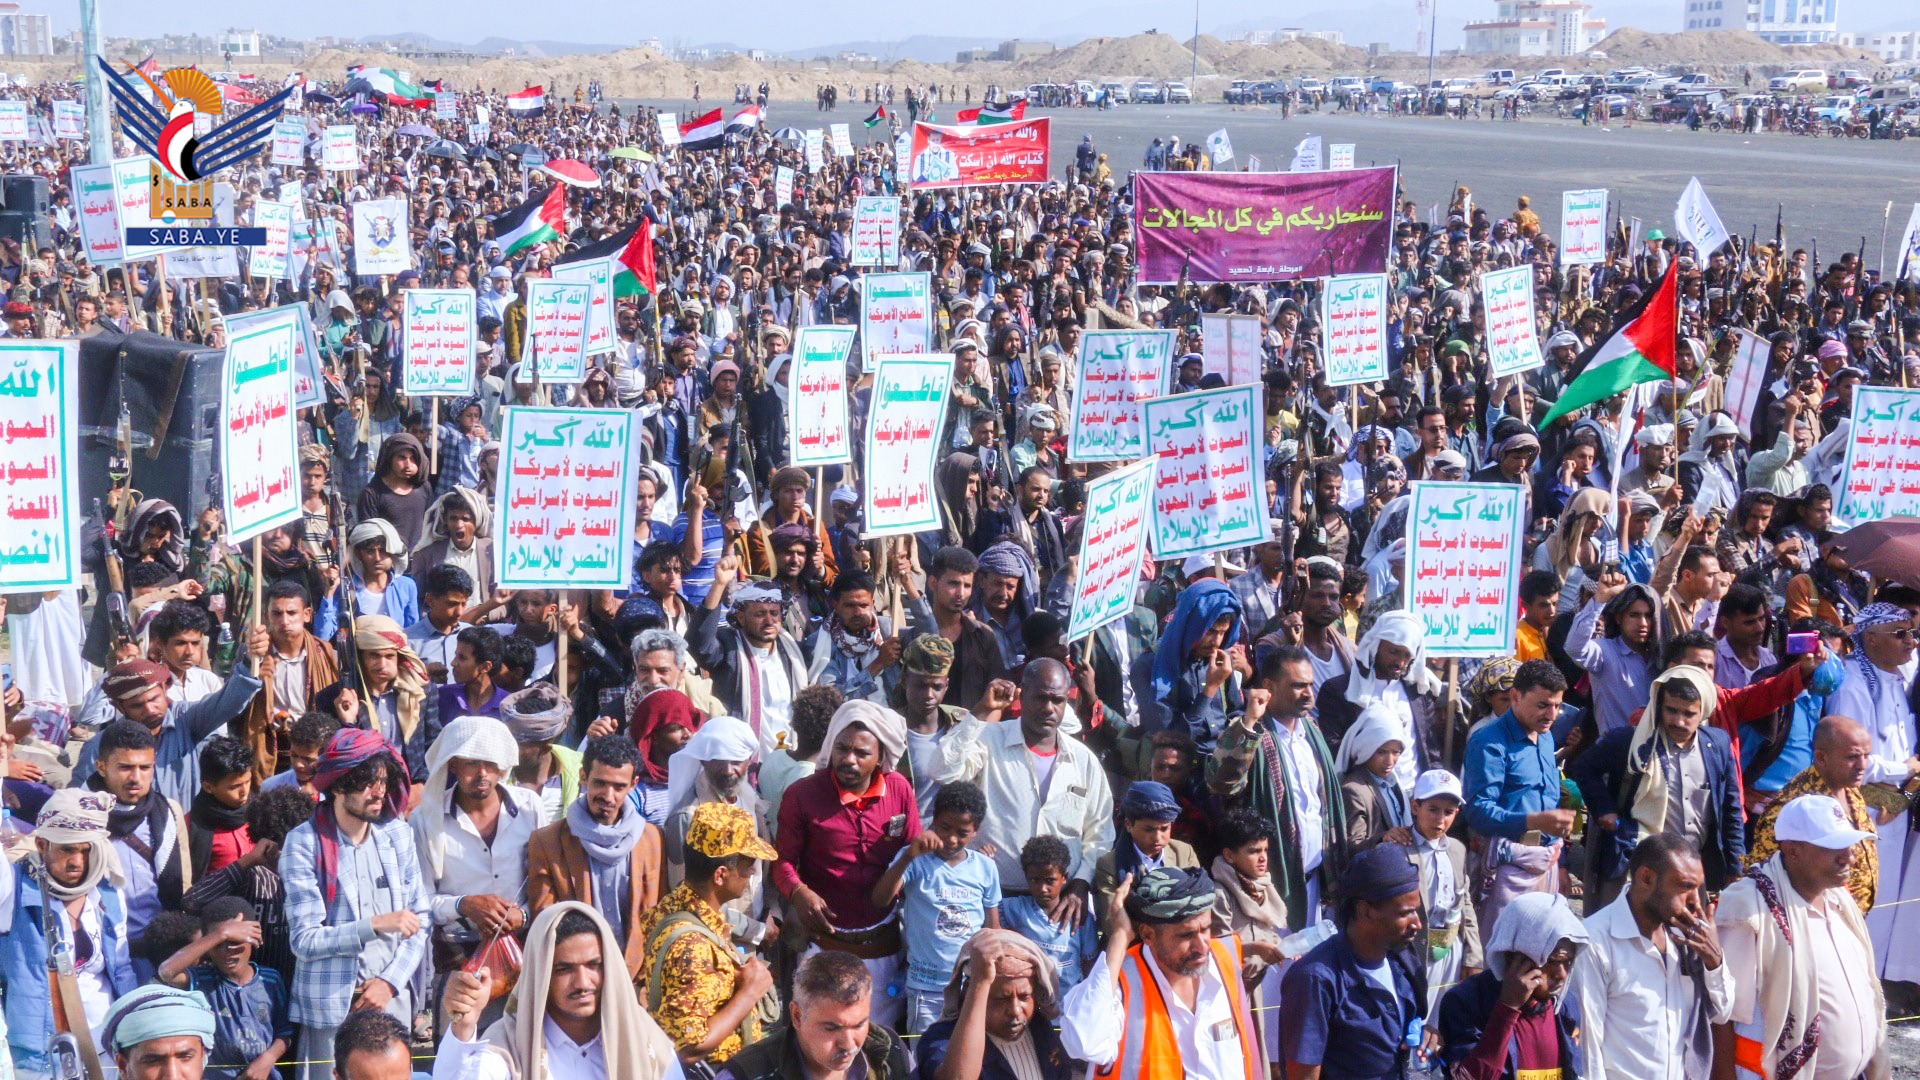 سبع مسيرات بتعز تؤكد الجهوزية لخوض معركة الجهاد إسنادا للأشقاء في غزة